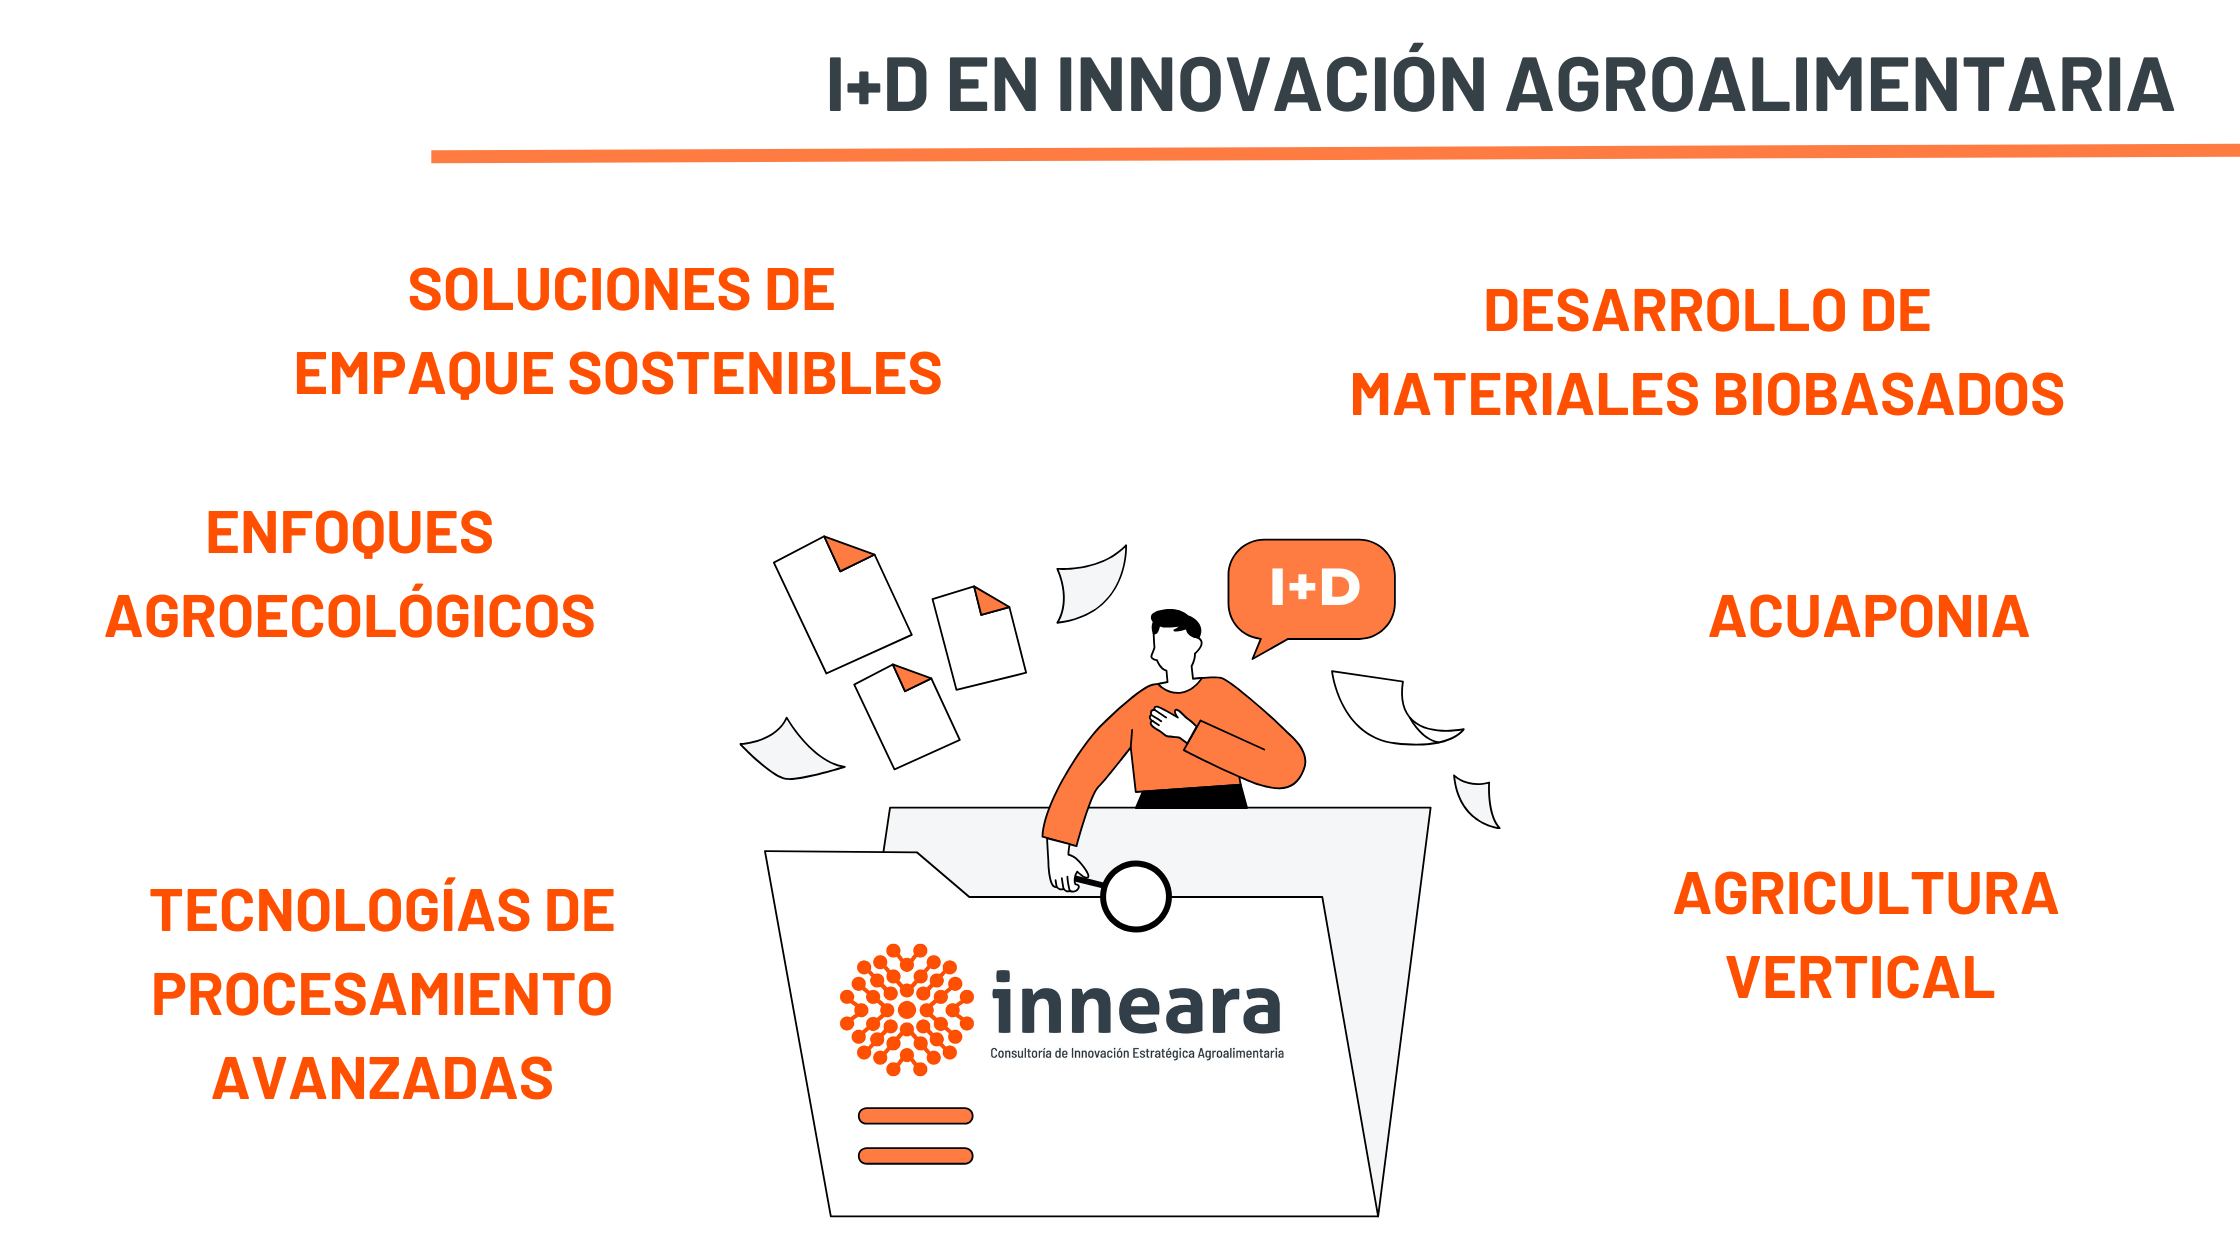 i+d en innovación agroalimentaria